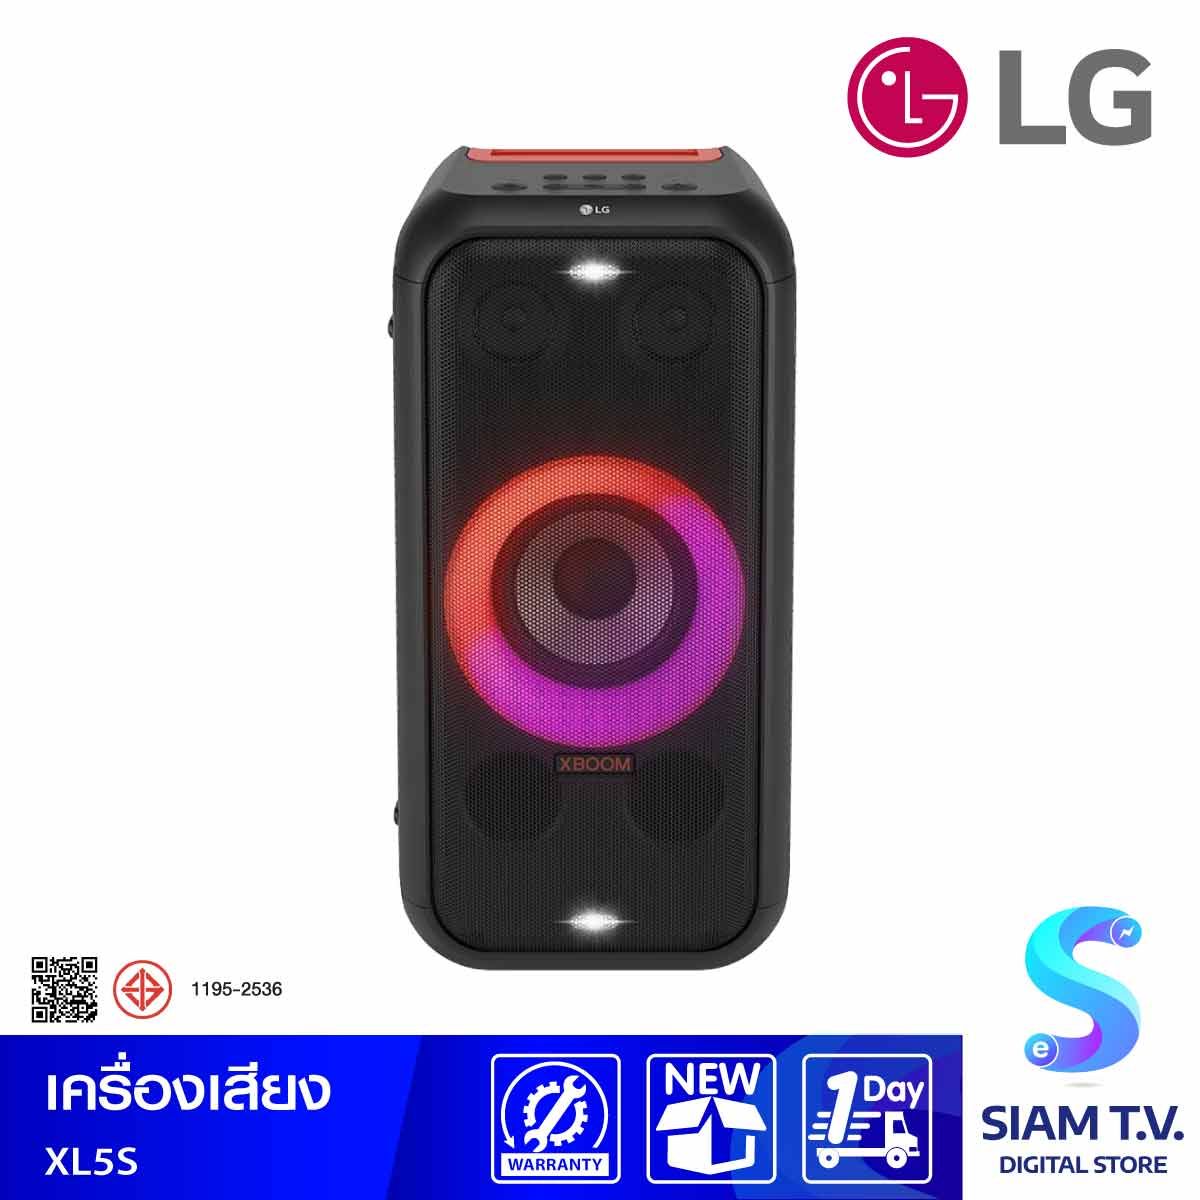 LG XBOOM ชุดเครื่องเสียง Sound Sound Power 2 รุ่น Power XL5S